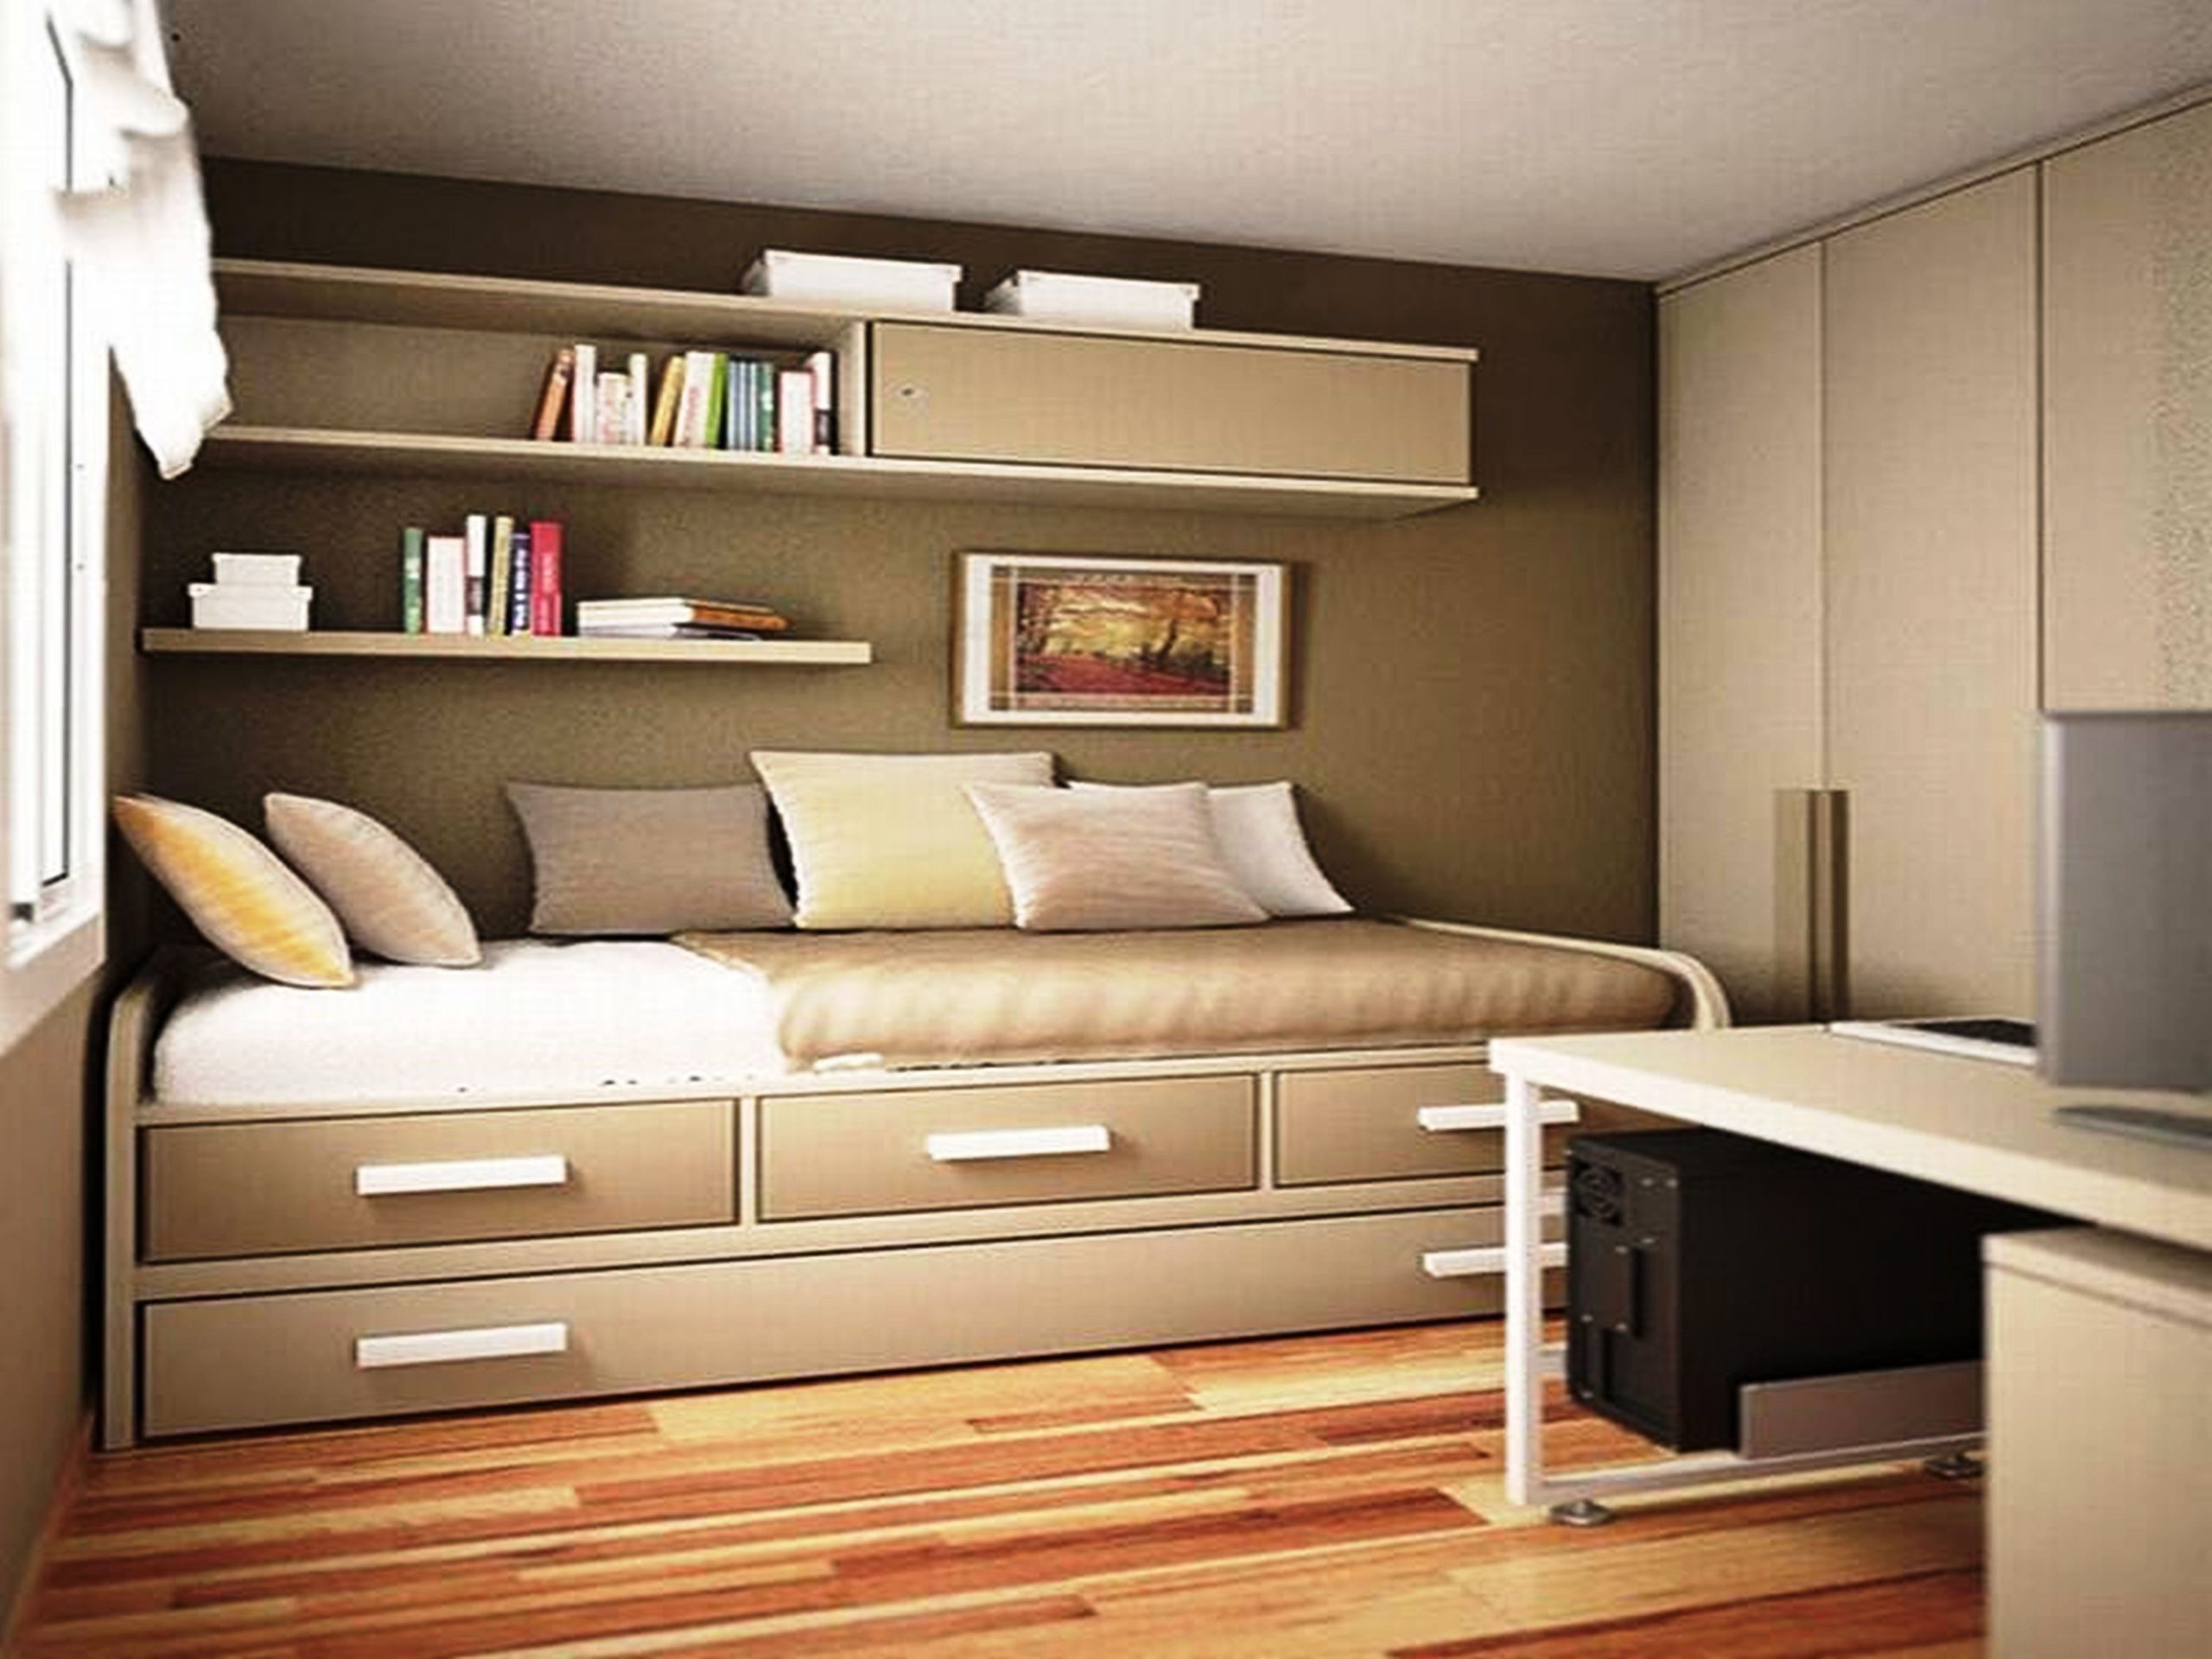 Cách chọn giường thông minh kết hợp tủ phù hợp cho ngôi nhà